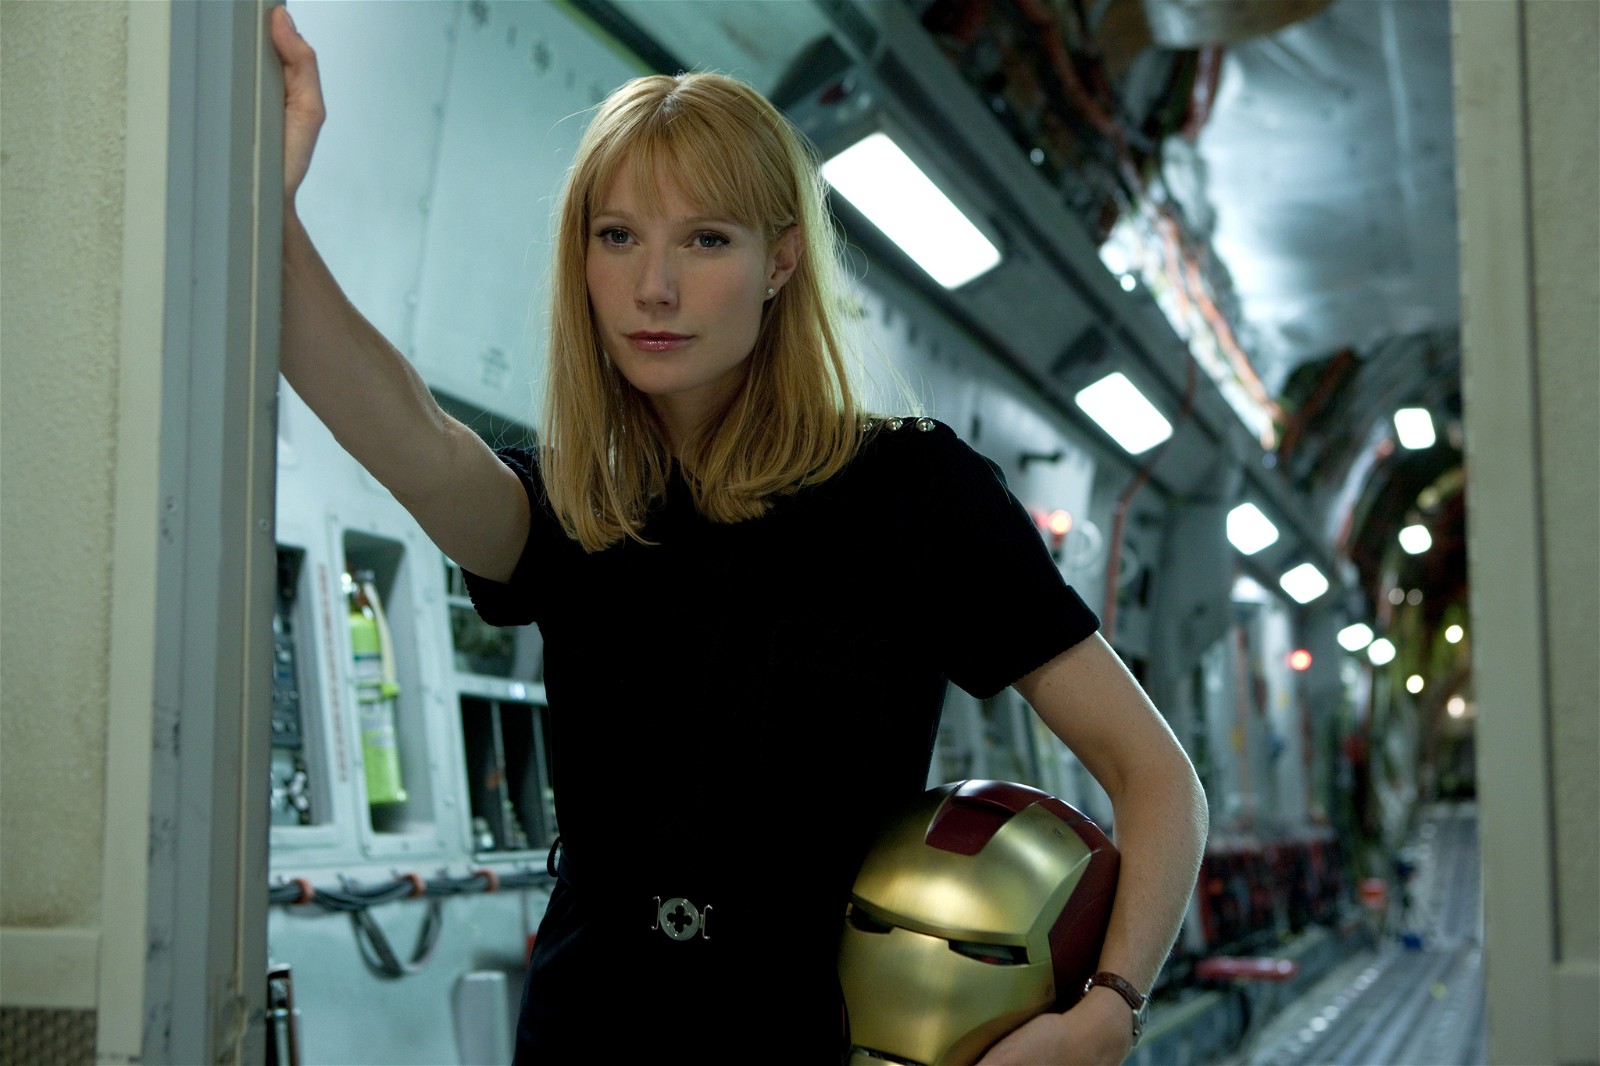 Iron Man star Gwyneth Paltrow